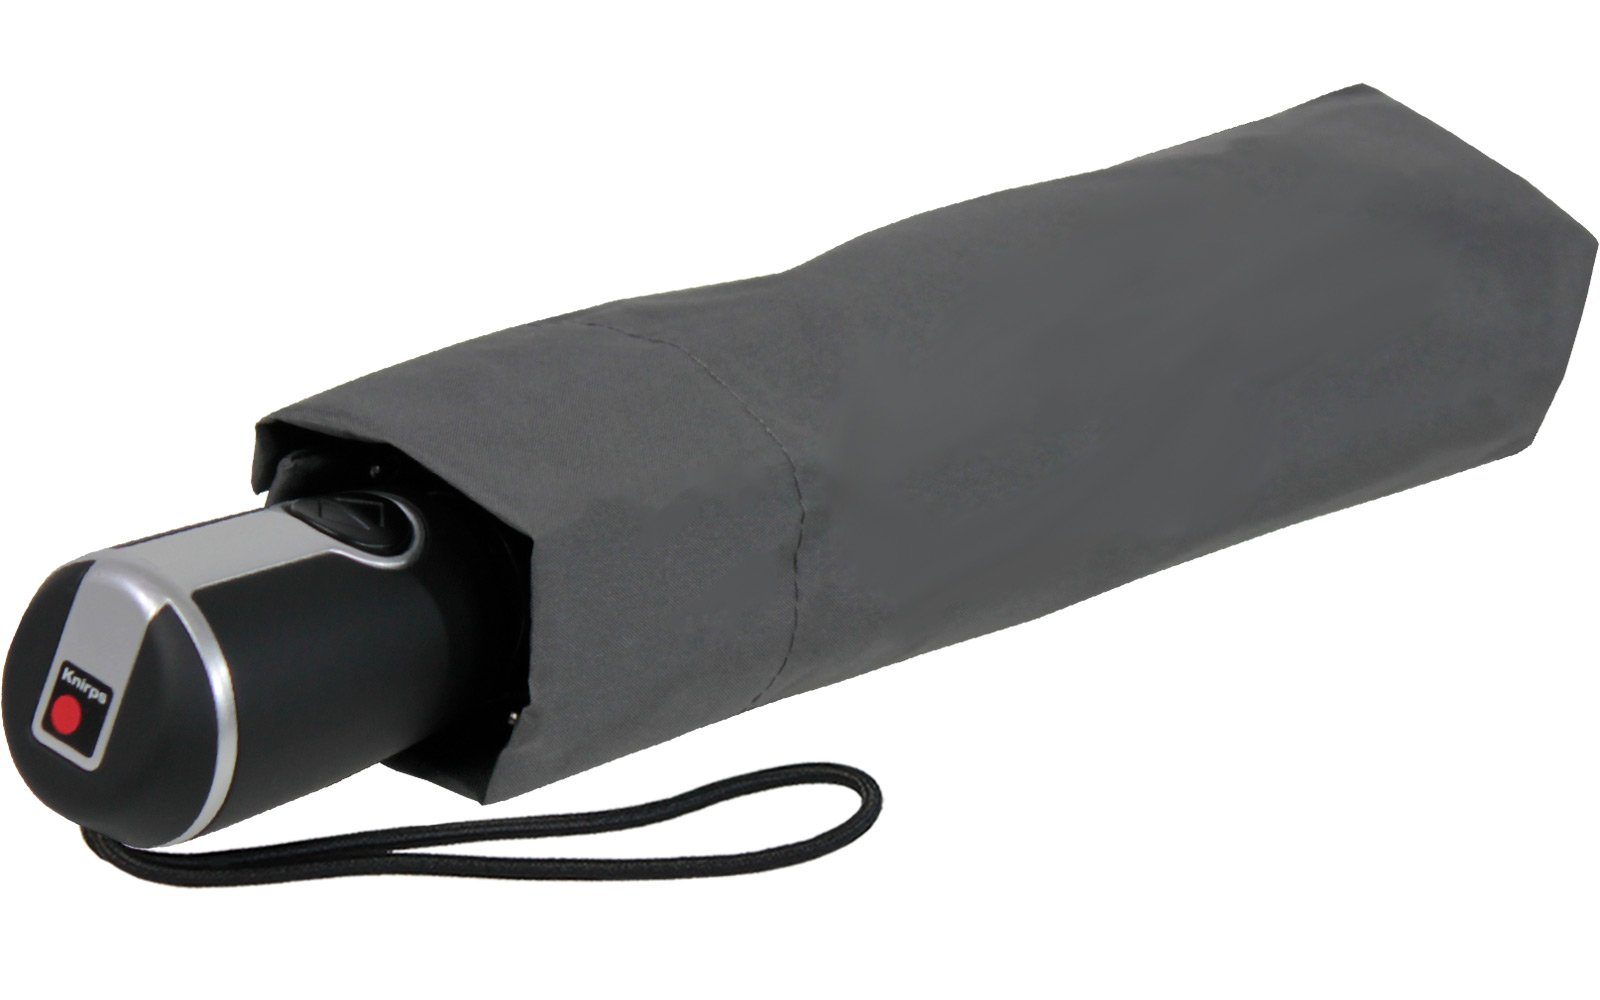 stabile dunkelgrau mit der Begleiter große, Knirps® Large Auf-Zu-Automatik, Duomatic Taschenregenschirm